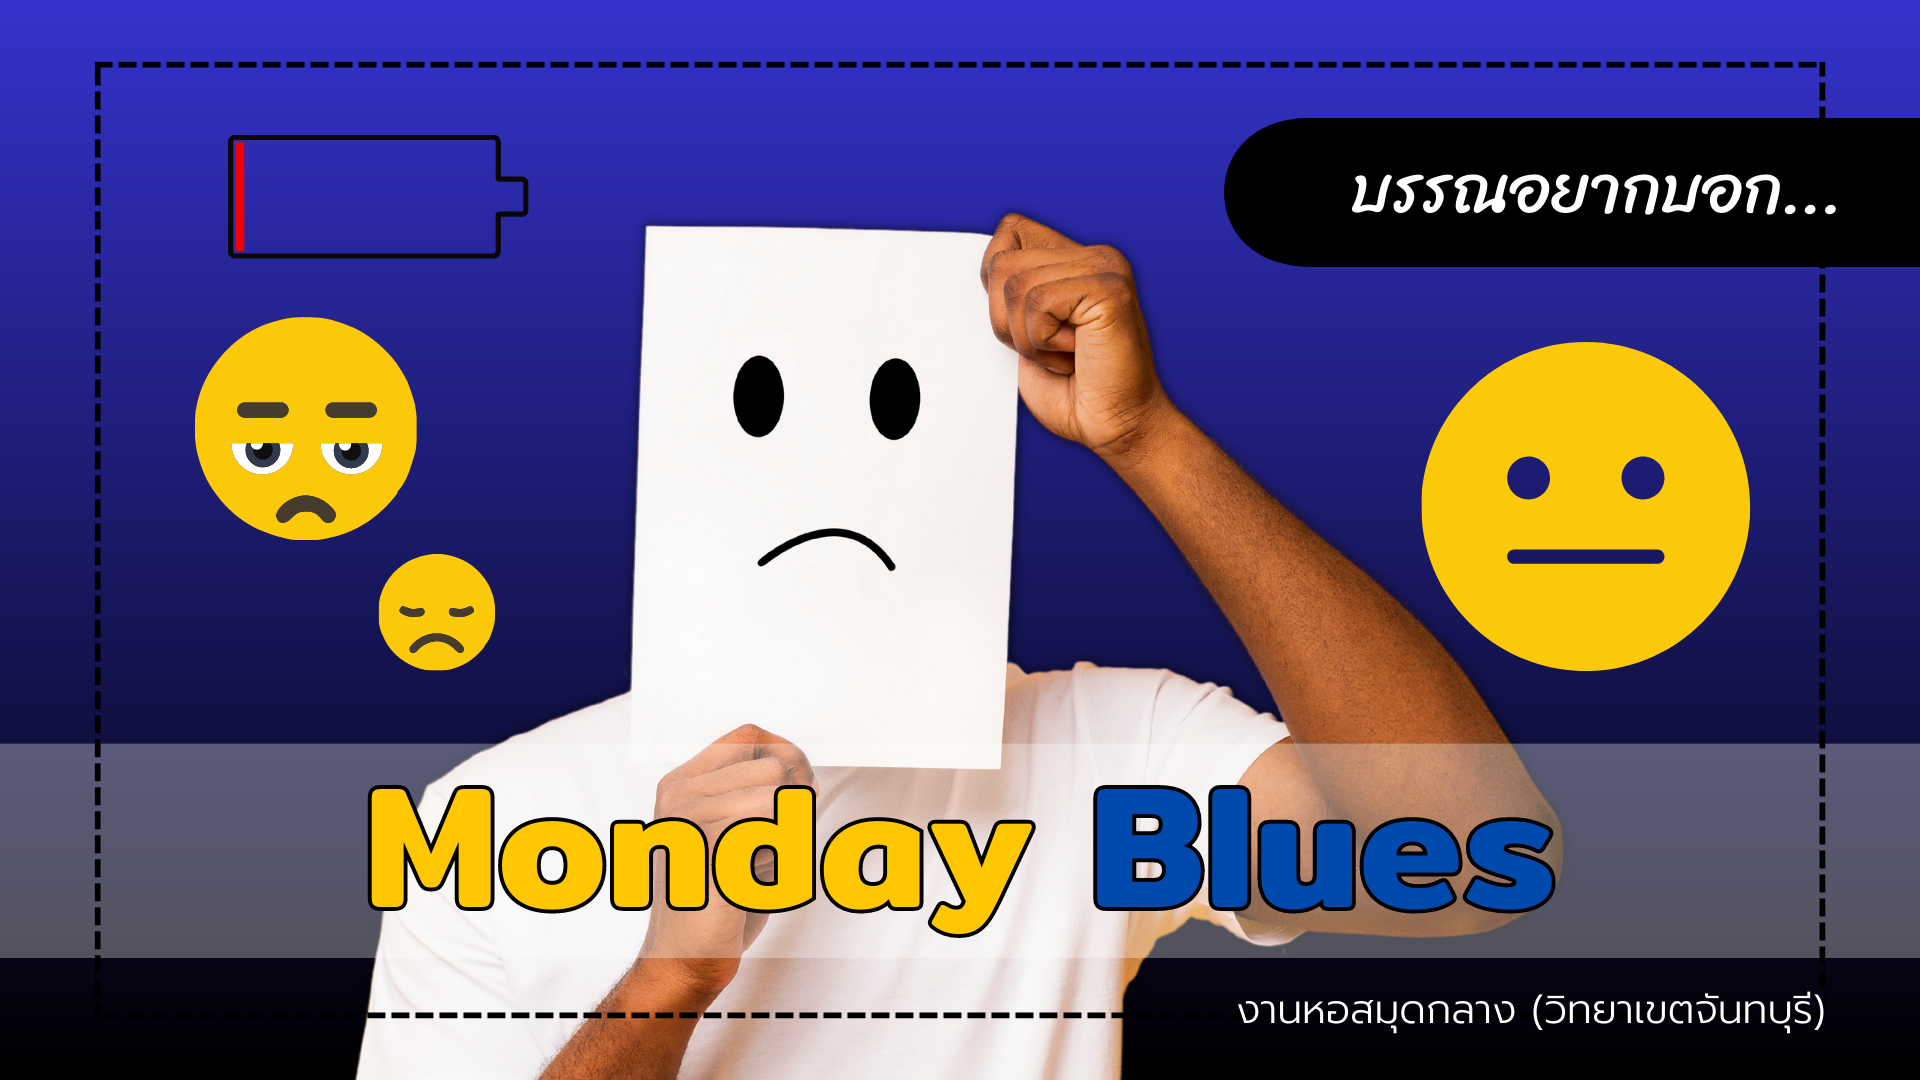 บรรณอยากบอก : Monday Blues…ฉันเกลียดวันจันทร์!!!